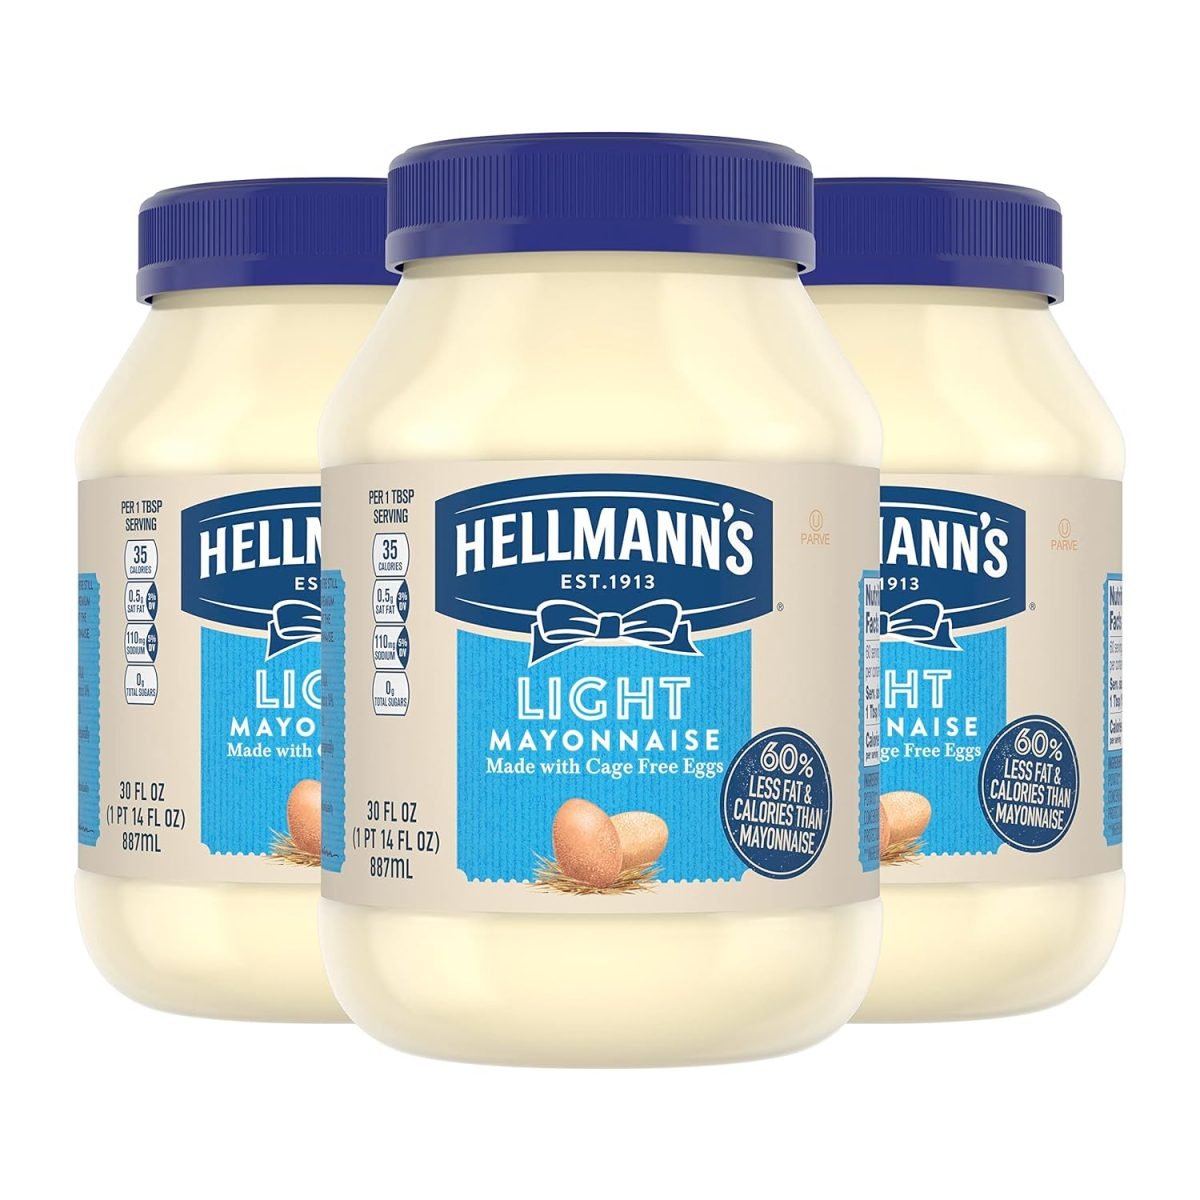 Hellmann's Light Mayonnaise Light Mayo